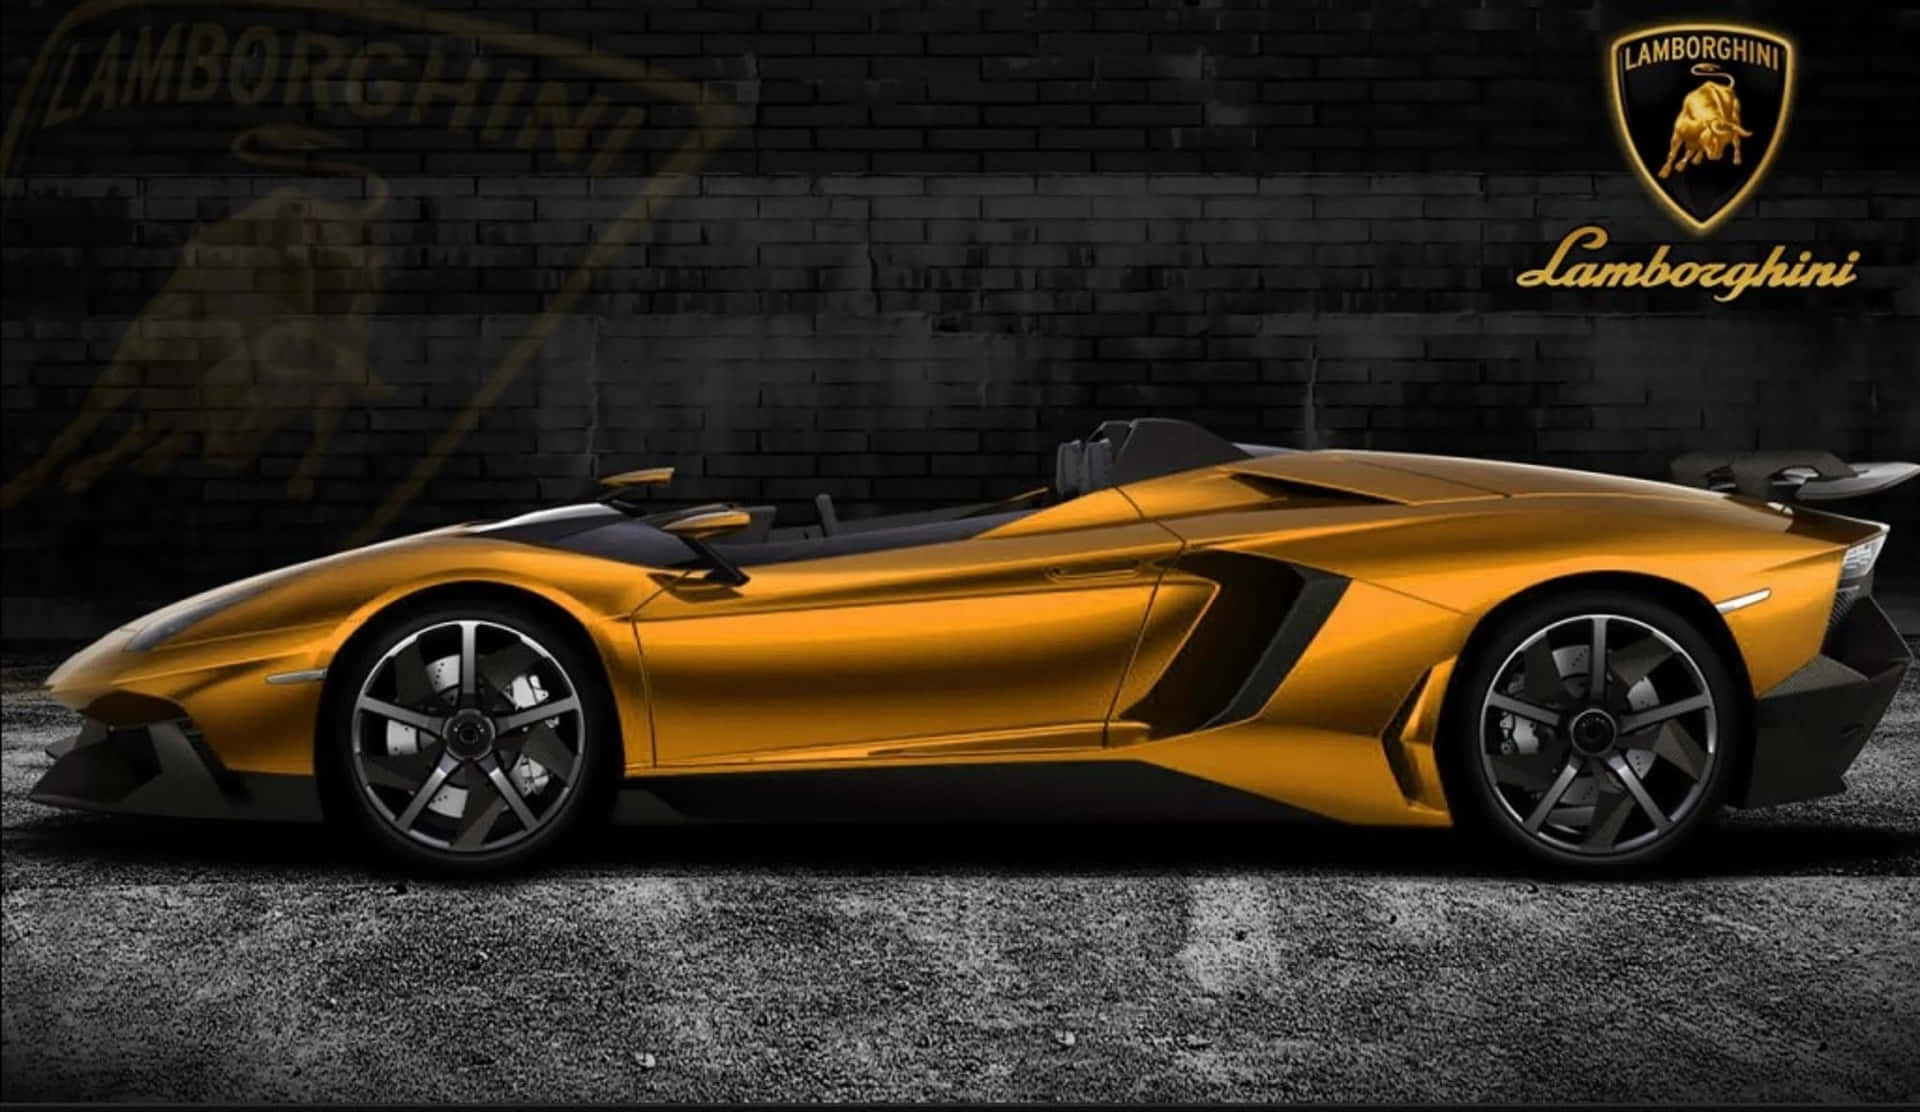 Erlebensie Luxus Am Steuer Eines Goldenen Lamborghinis. Wallpaper